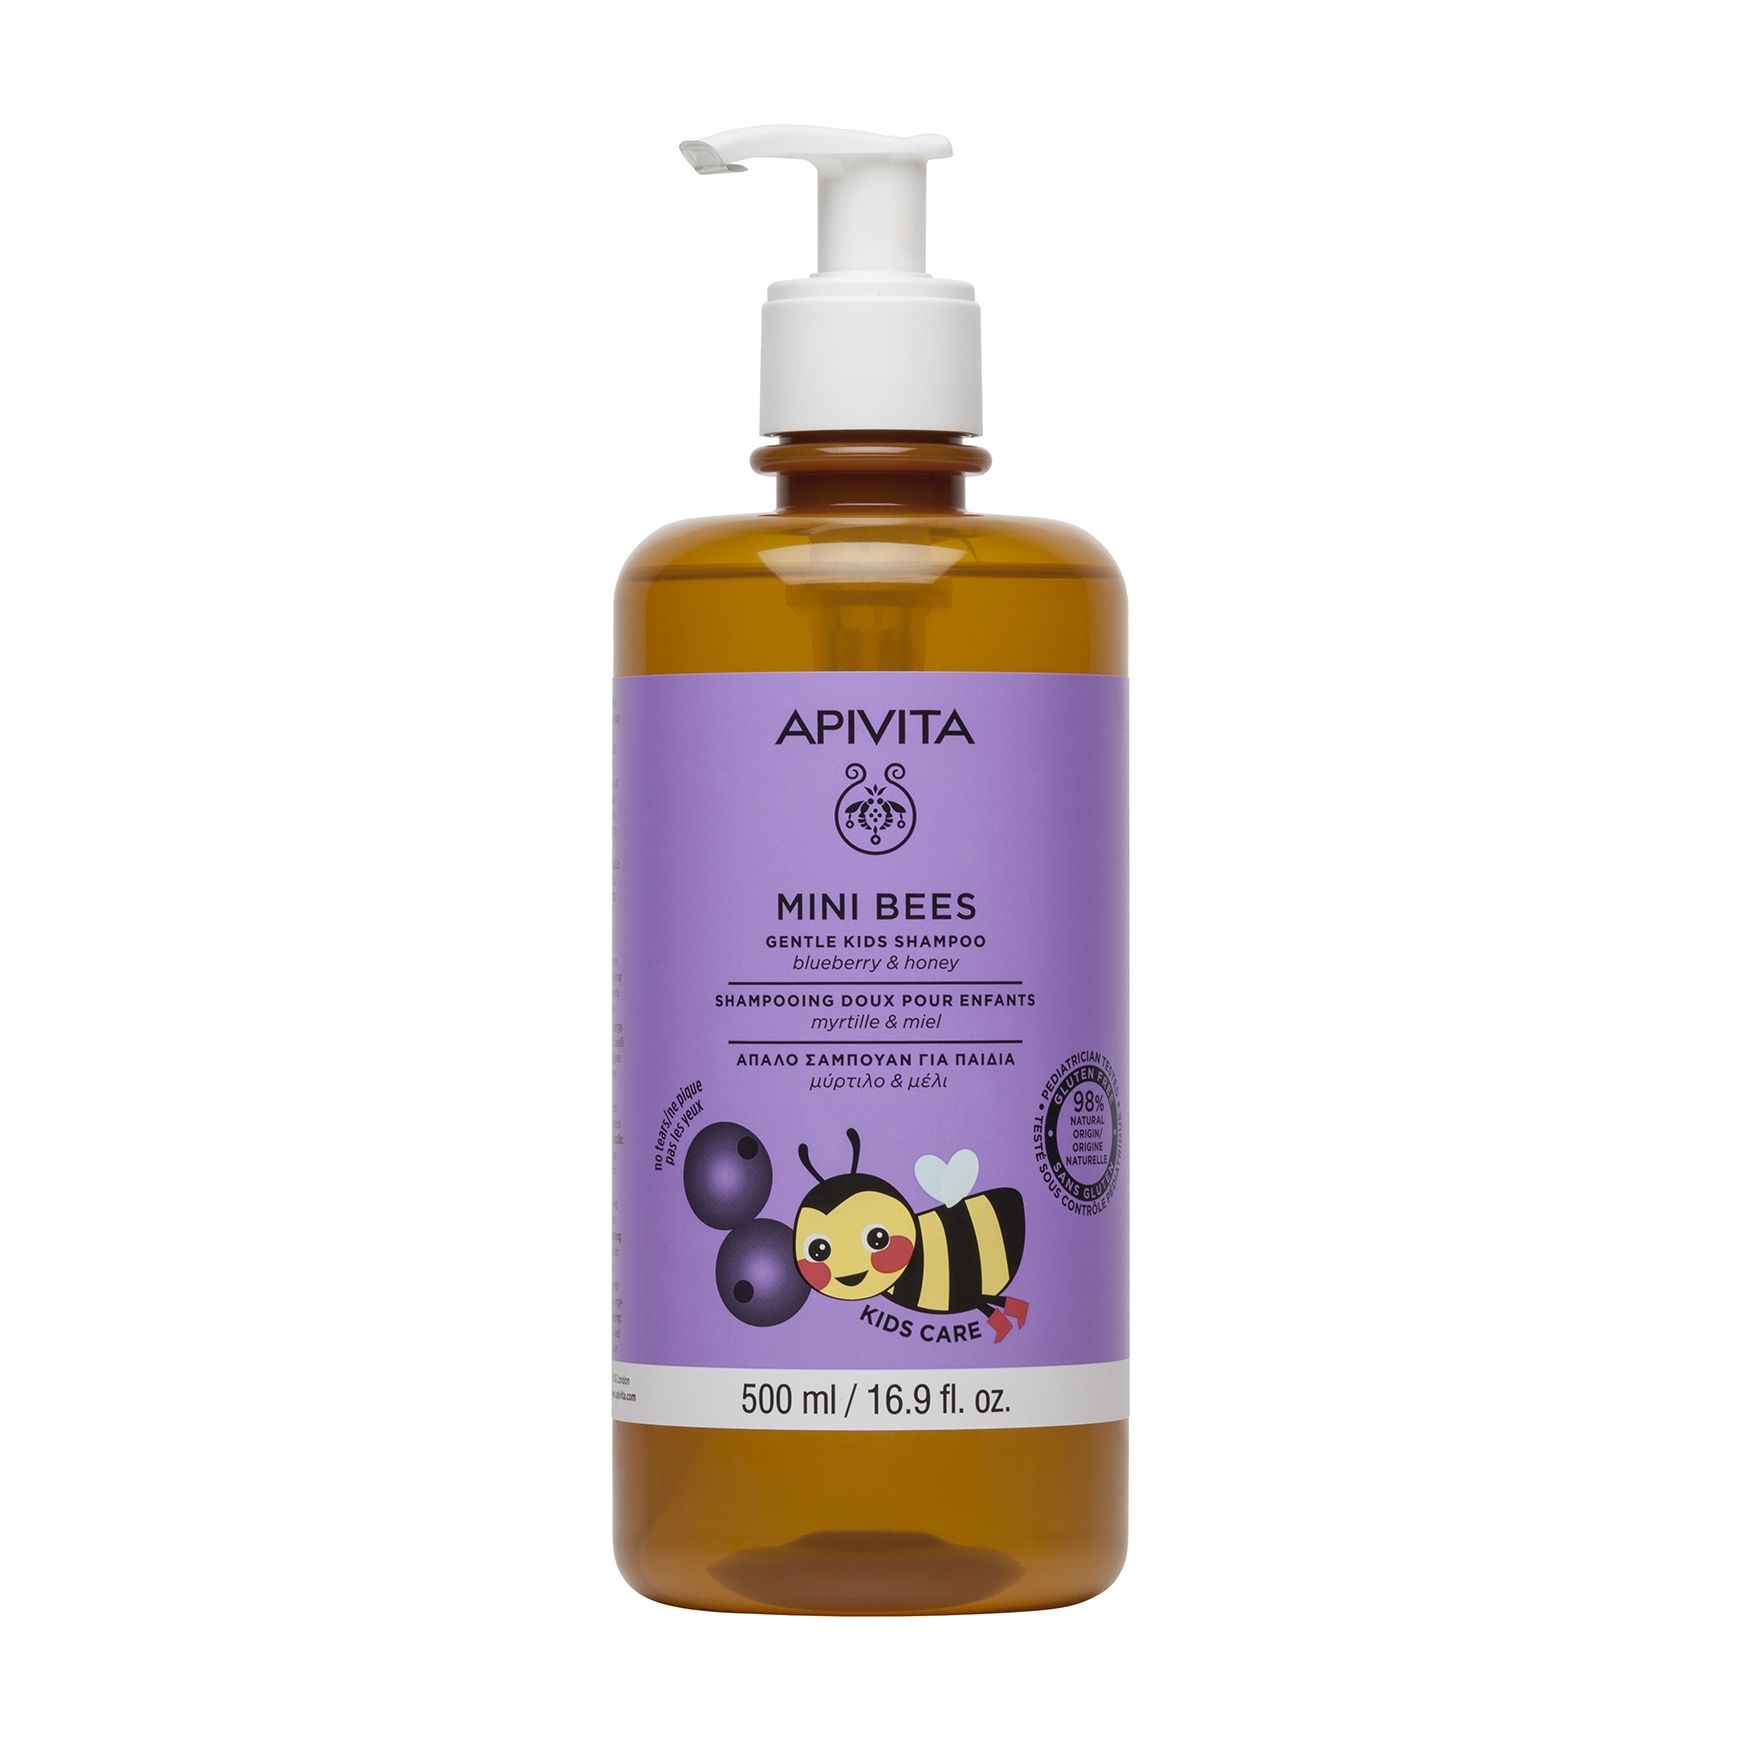 Нежный шампунь для волос Apivita Mini Bees Gentle Kids Shampoo с черникой и медом